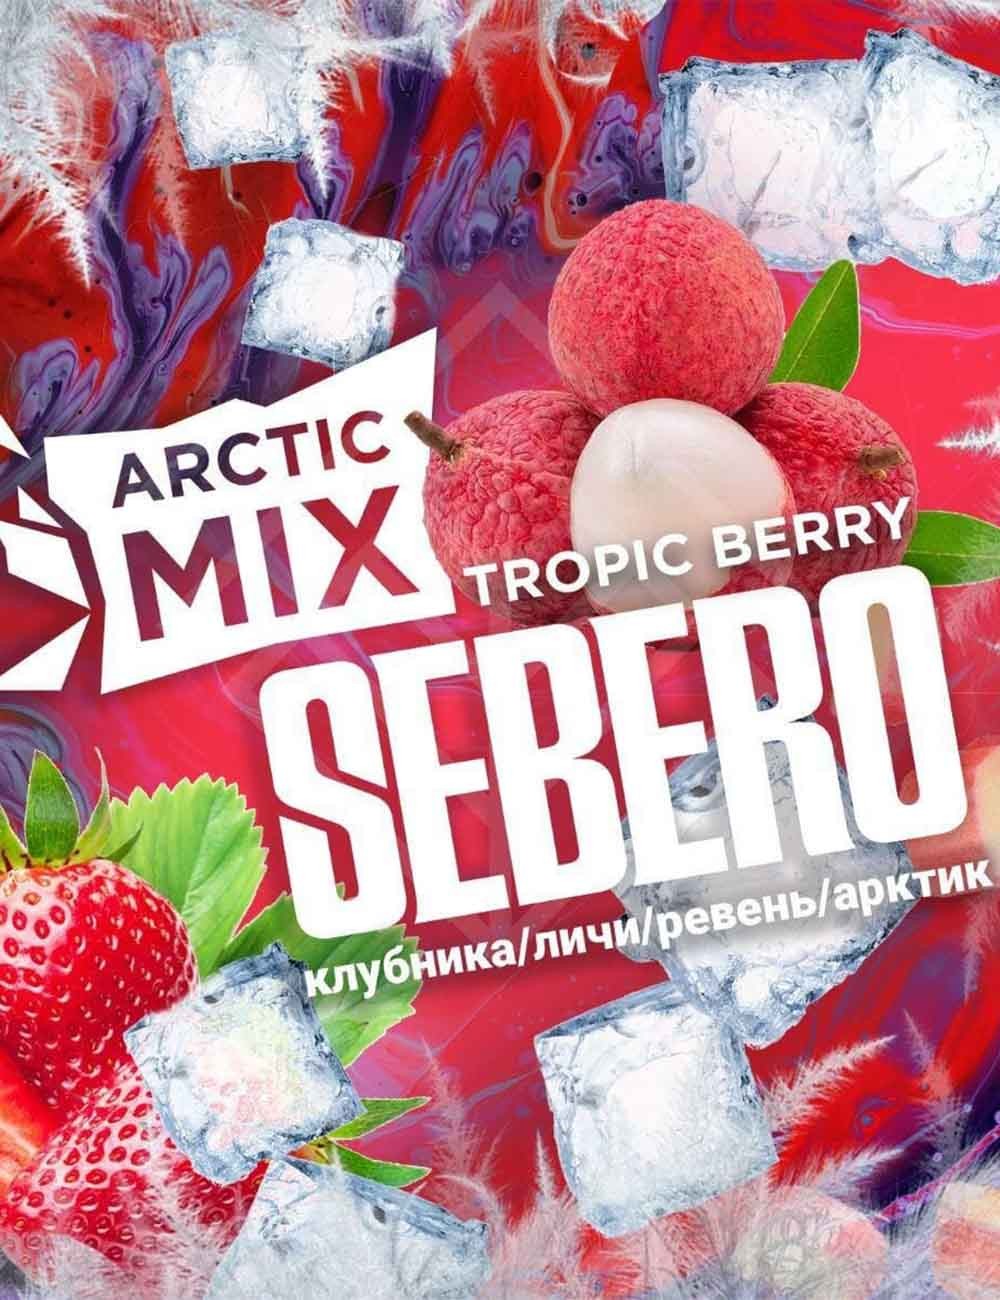 "Arctic Mix" Tropic Berry (Trpic Merry)